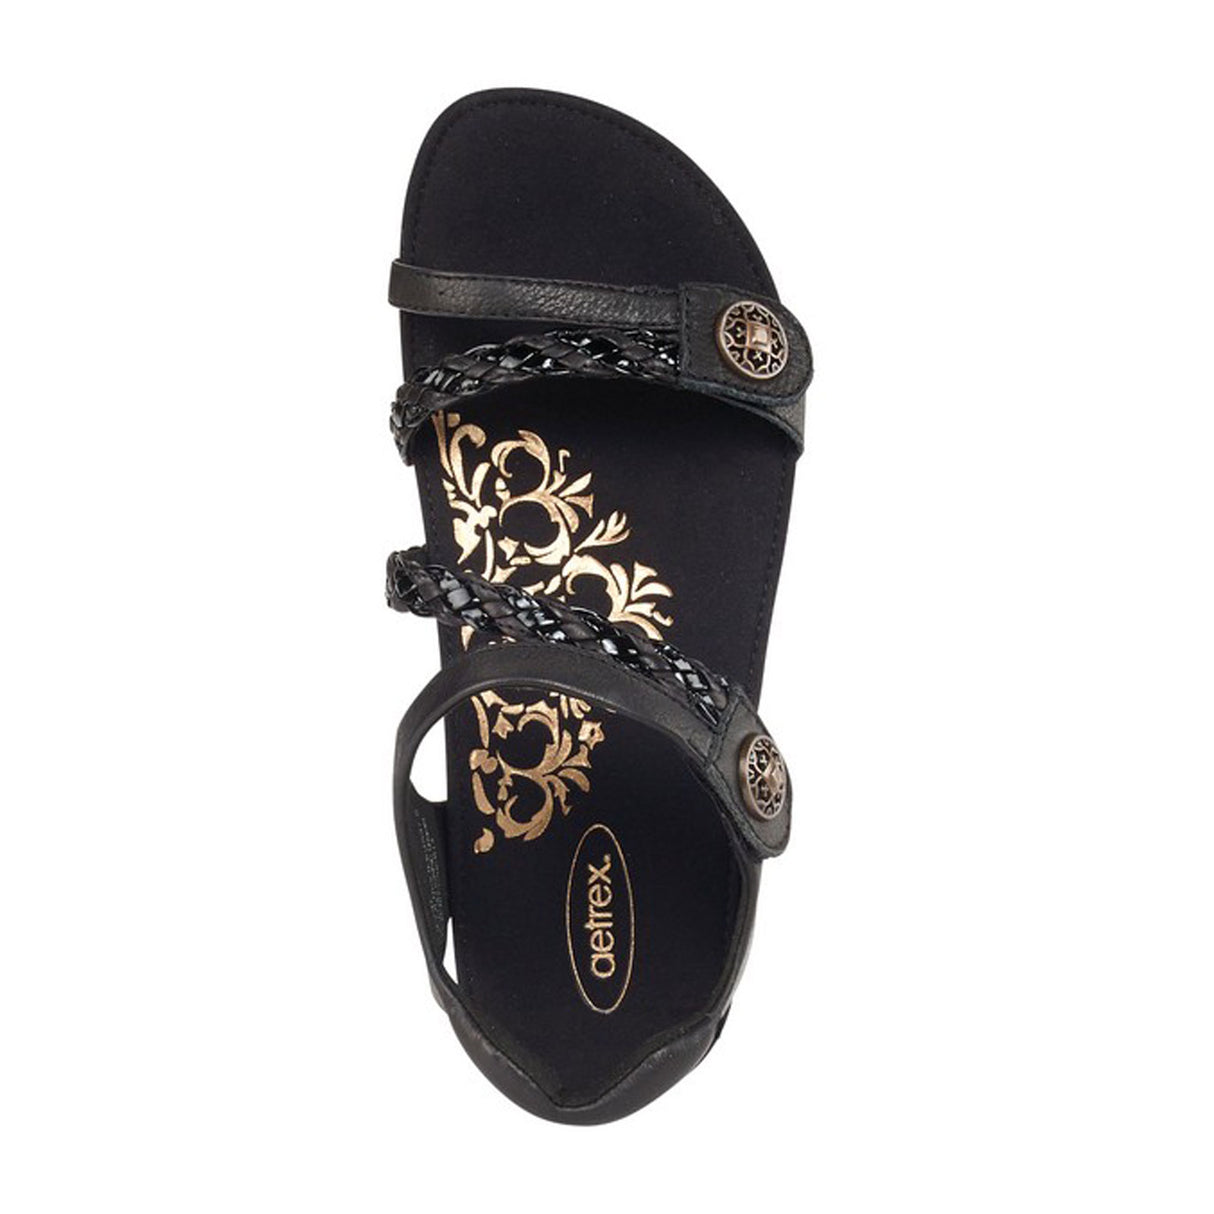 Aetrex Jillian Braided Backstrap Sandal (Women) - Black Sandals - Backstrap - The Heel Shoe Fitters